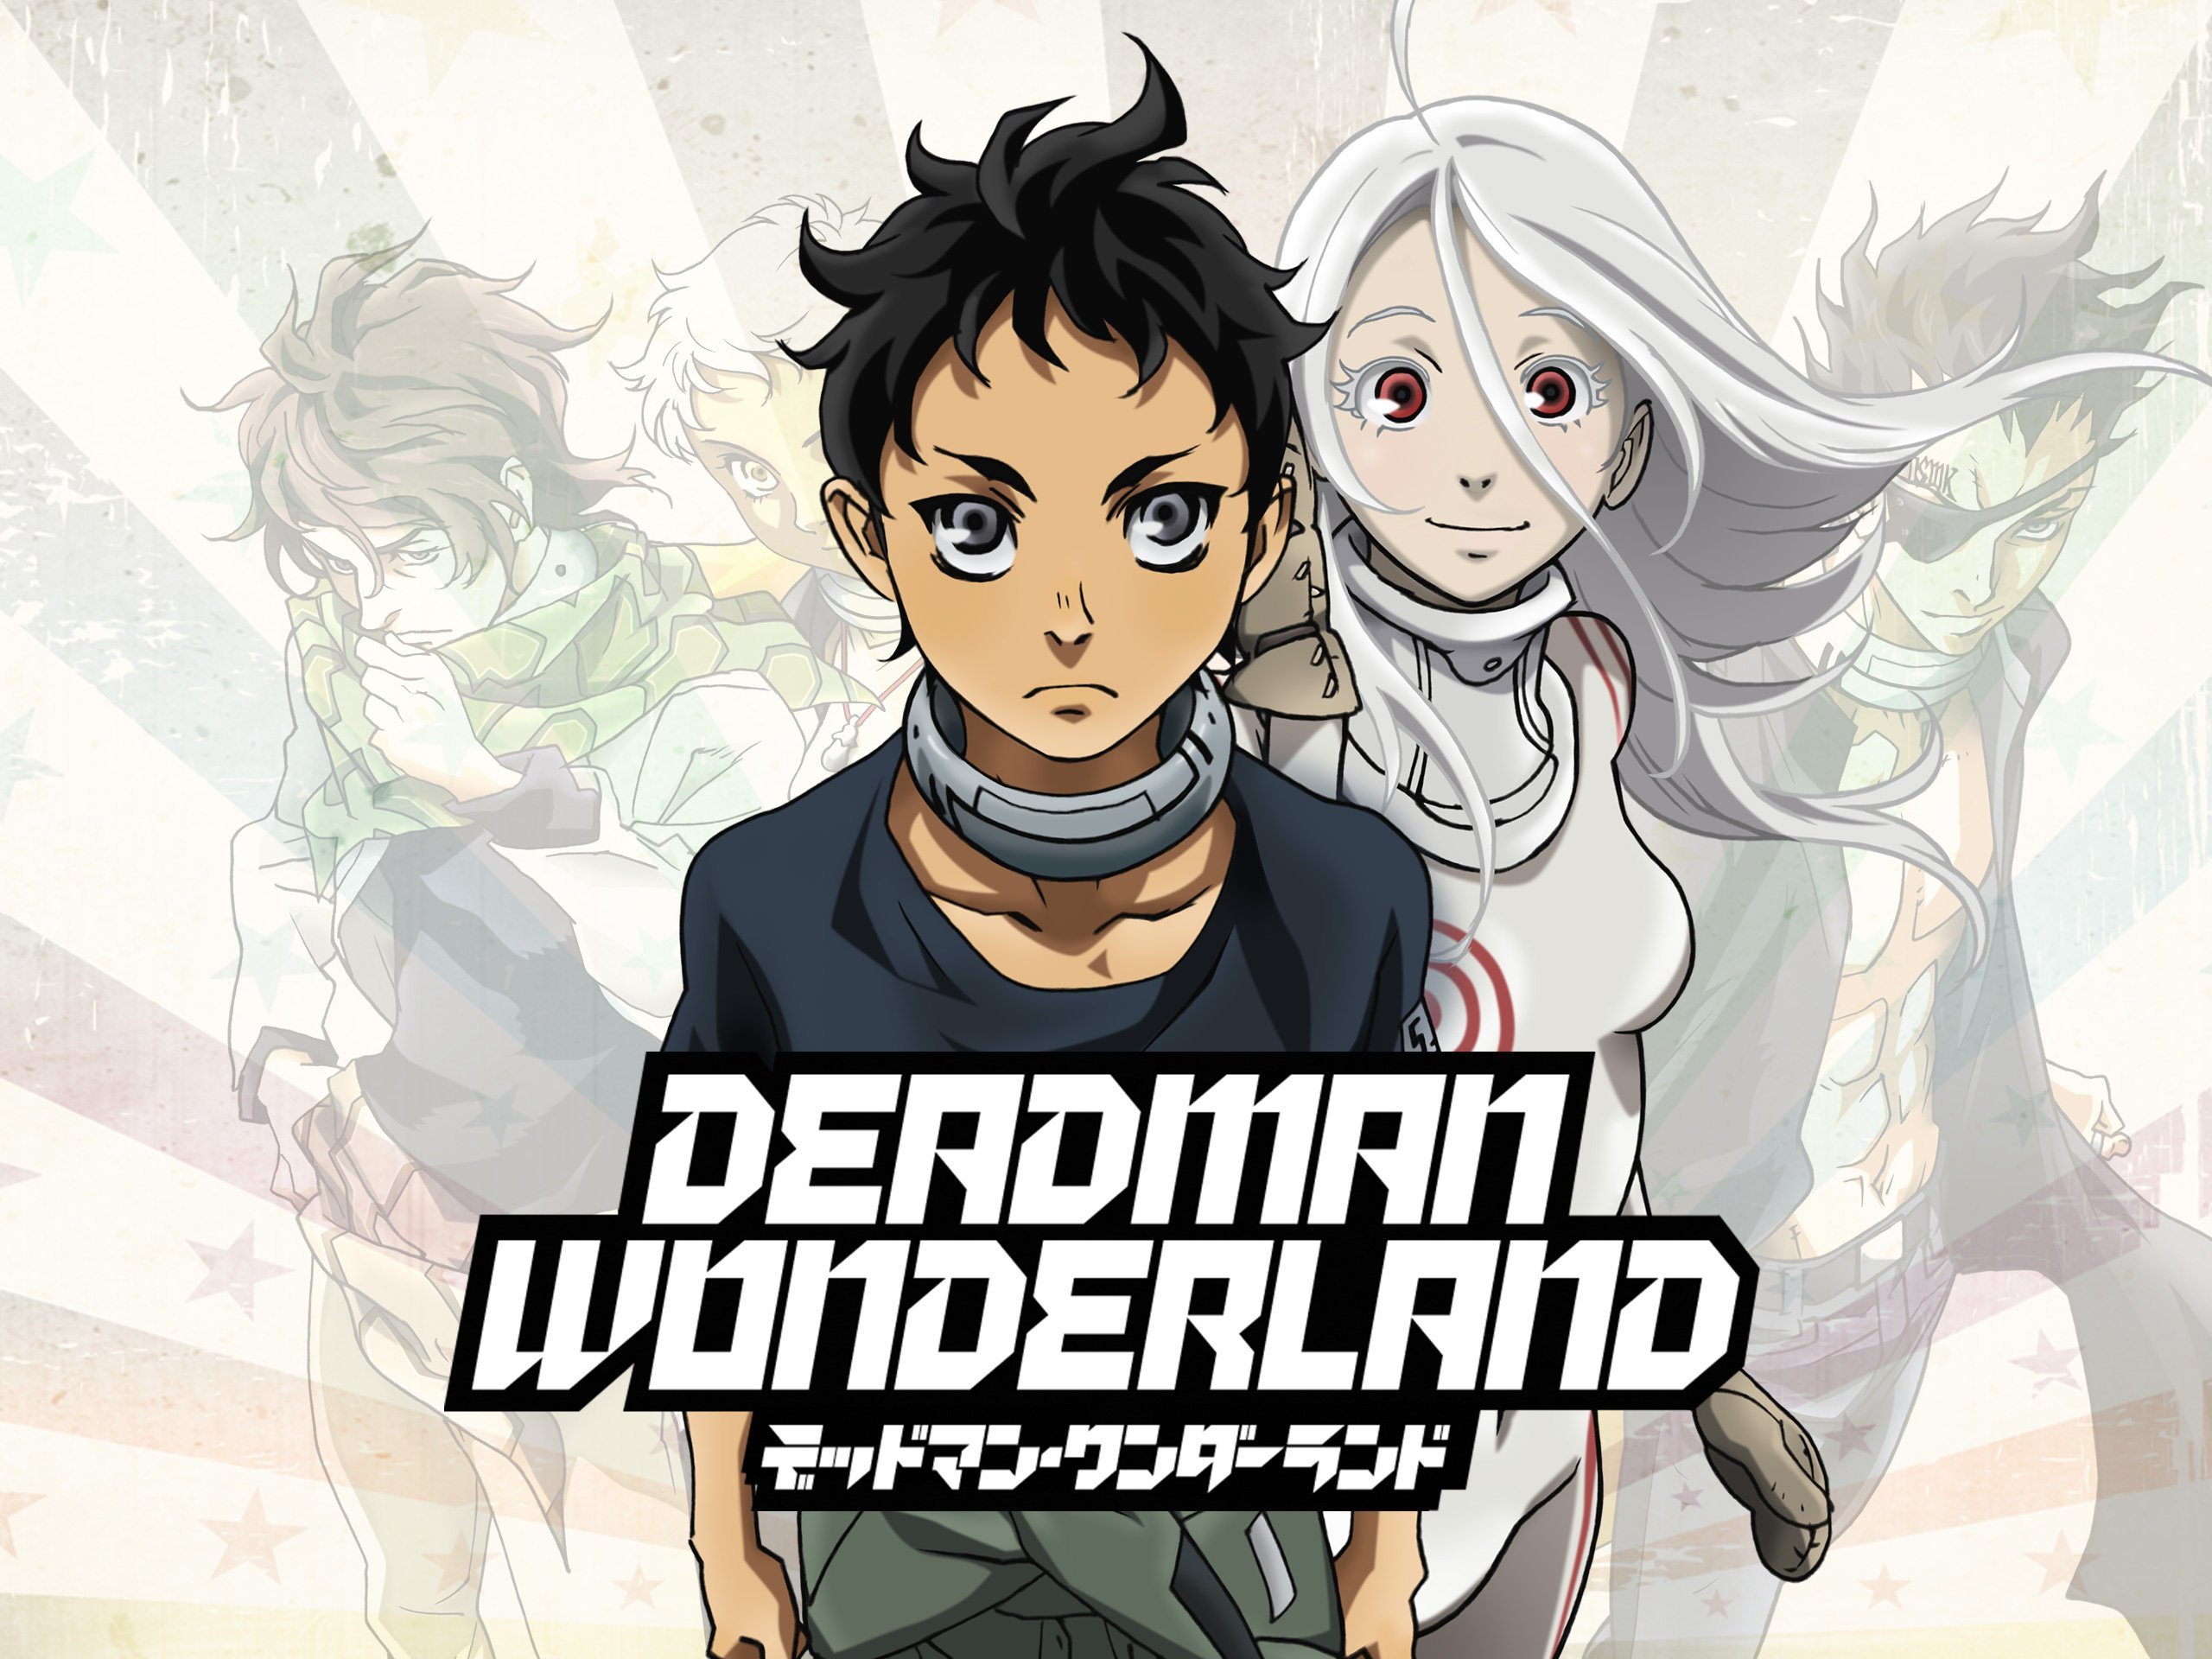 Watch Deadman Wonderland